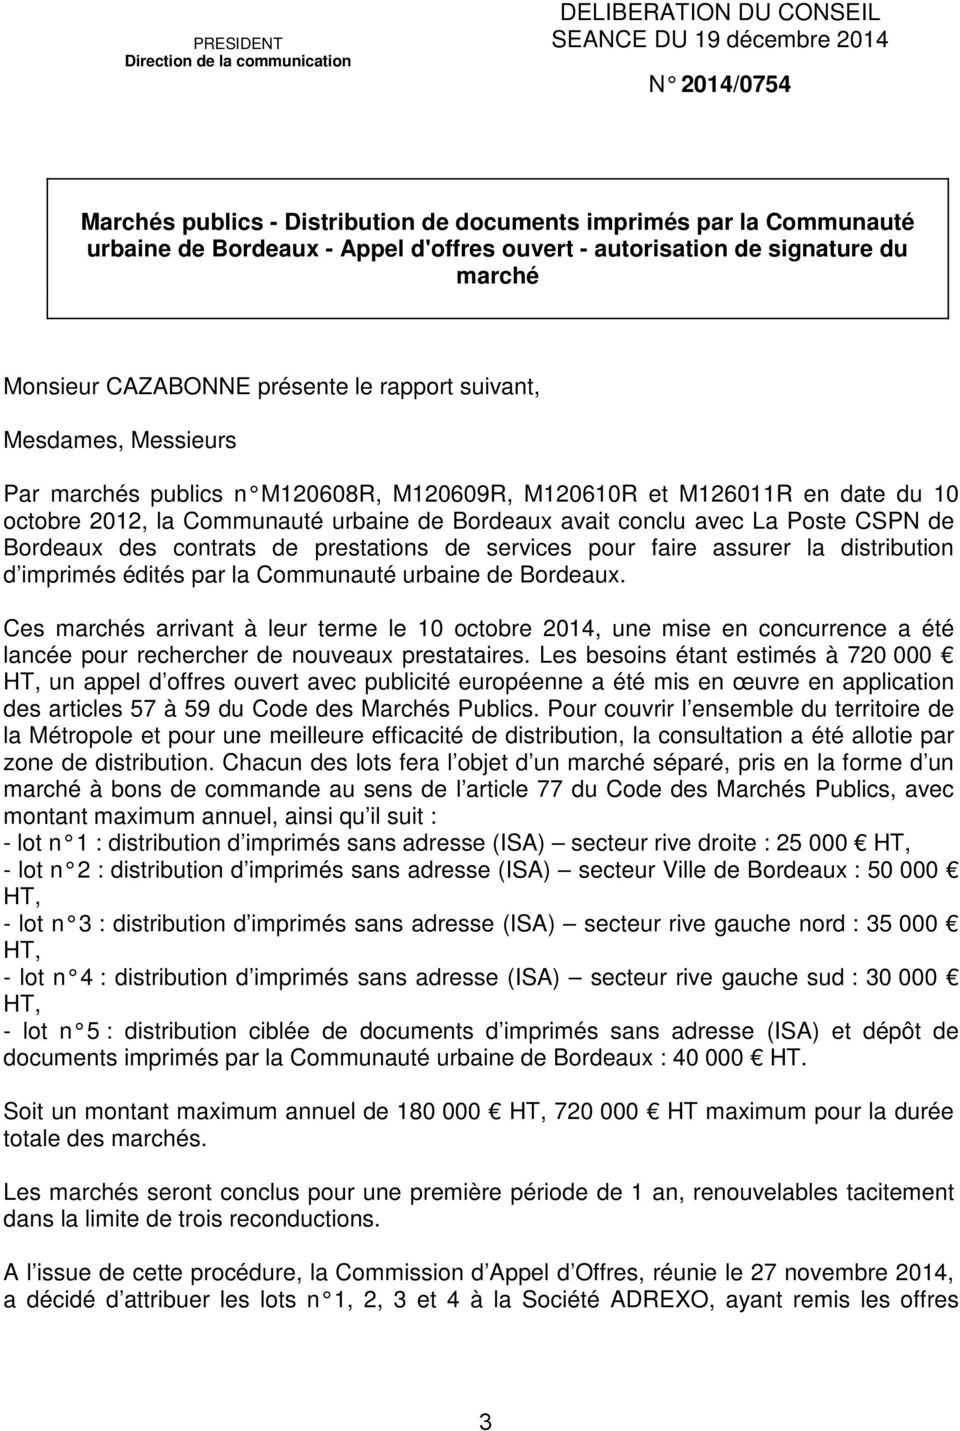 du 10 octobre 2012, la Communauté urbaine de Bordeaux avait conclu avec La Poste CSPN de Bordeaux des contrats de prestations de services pour faire assurer la distribution d imprimés édités par la